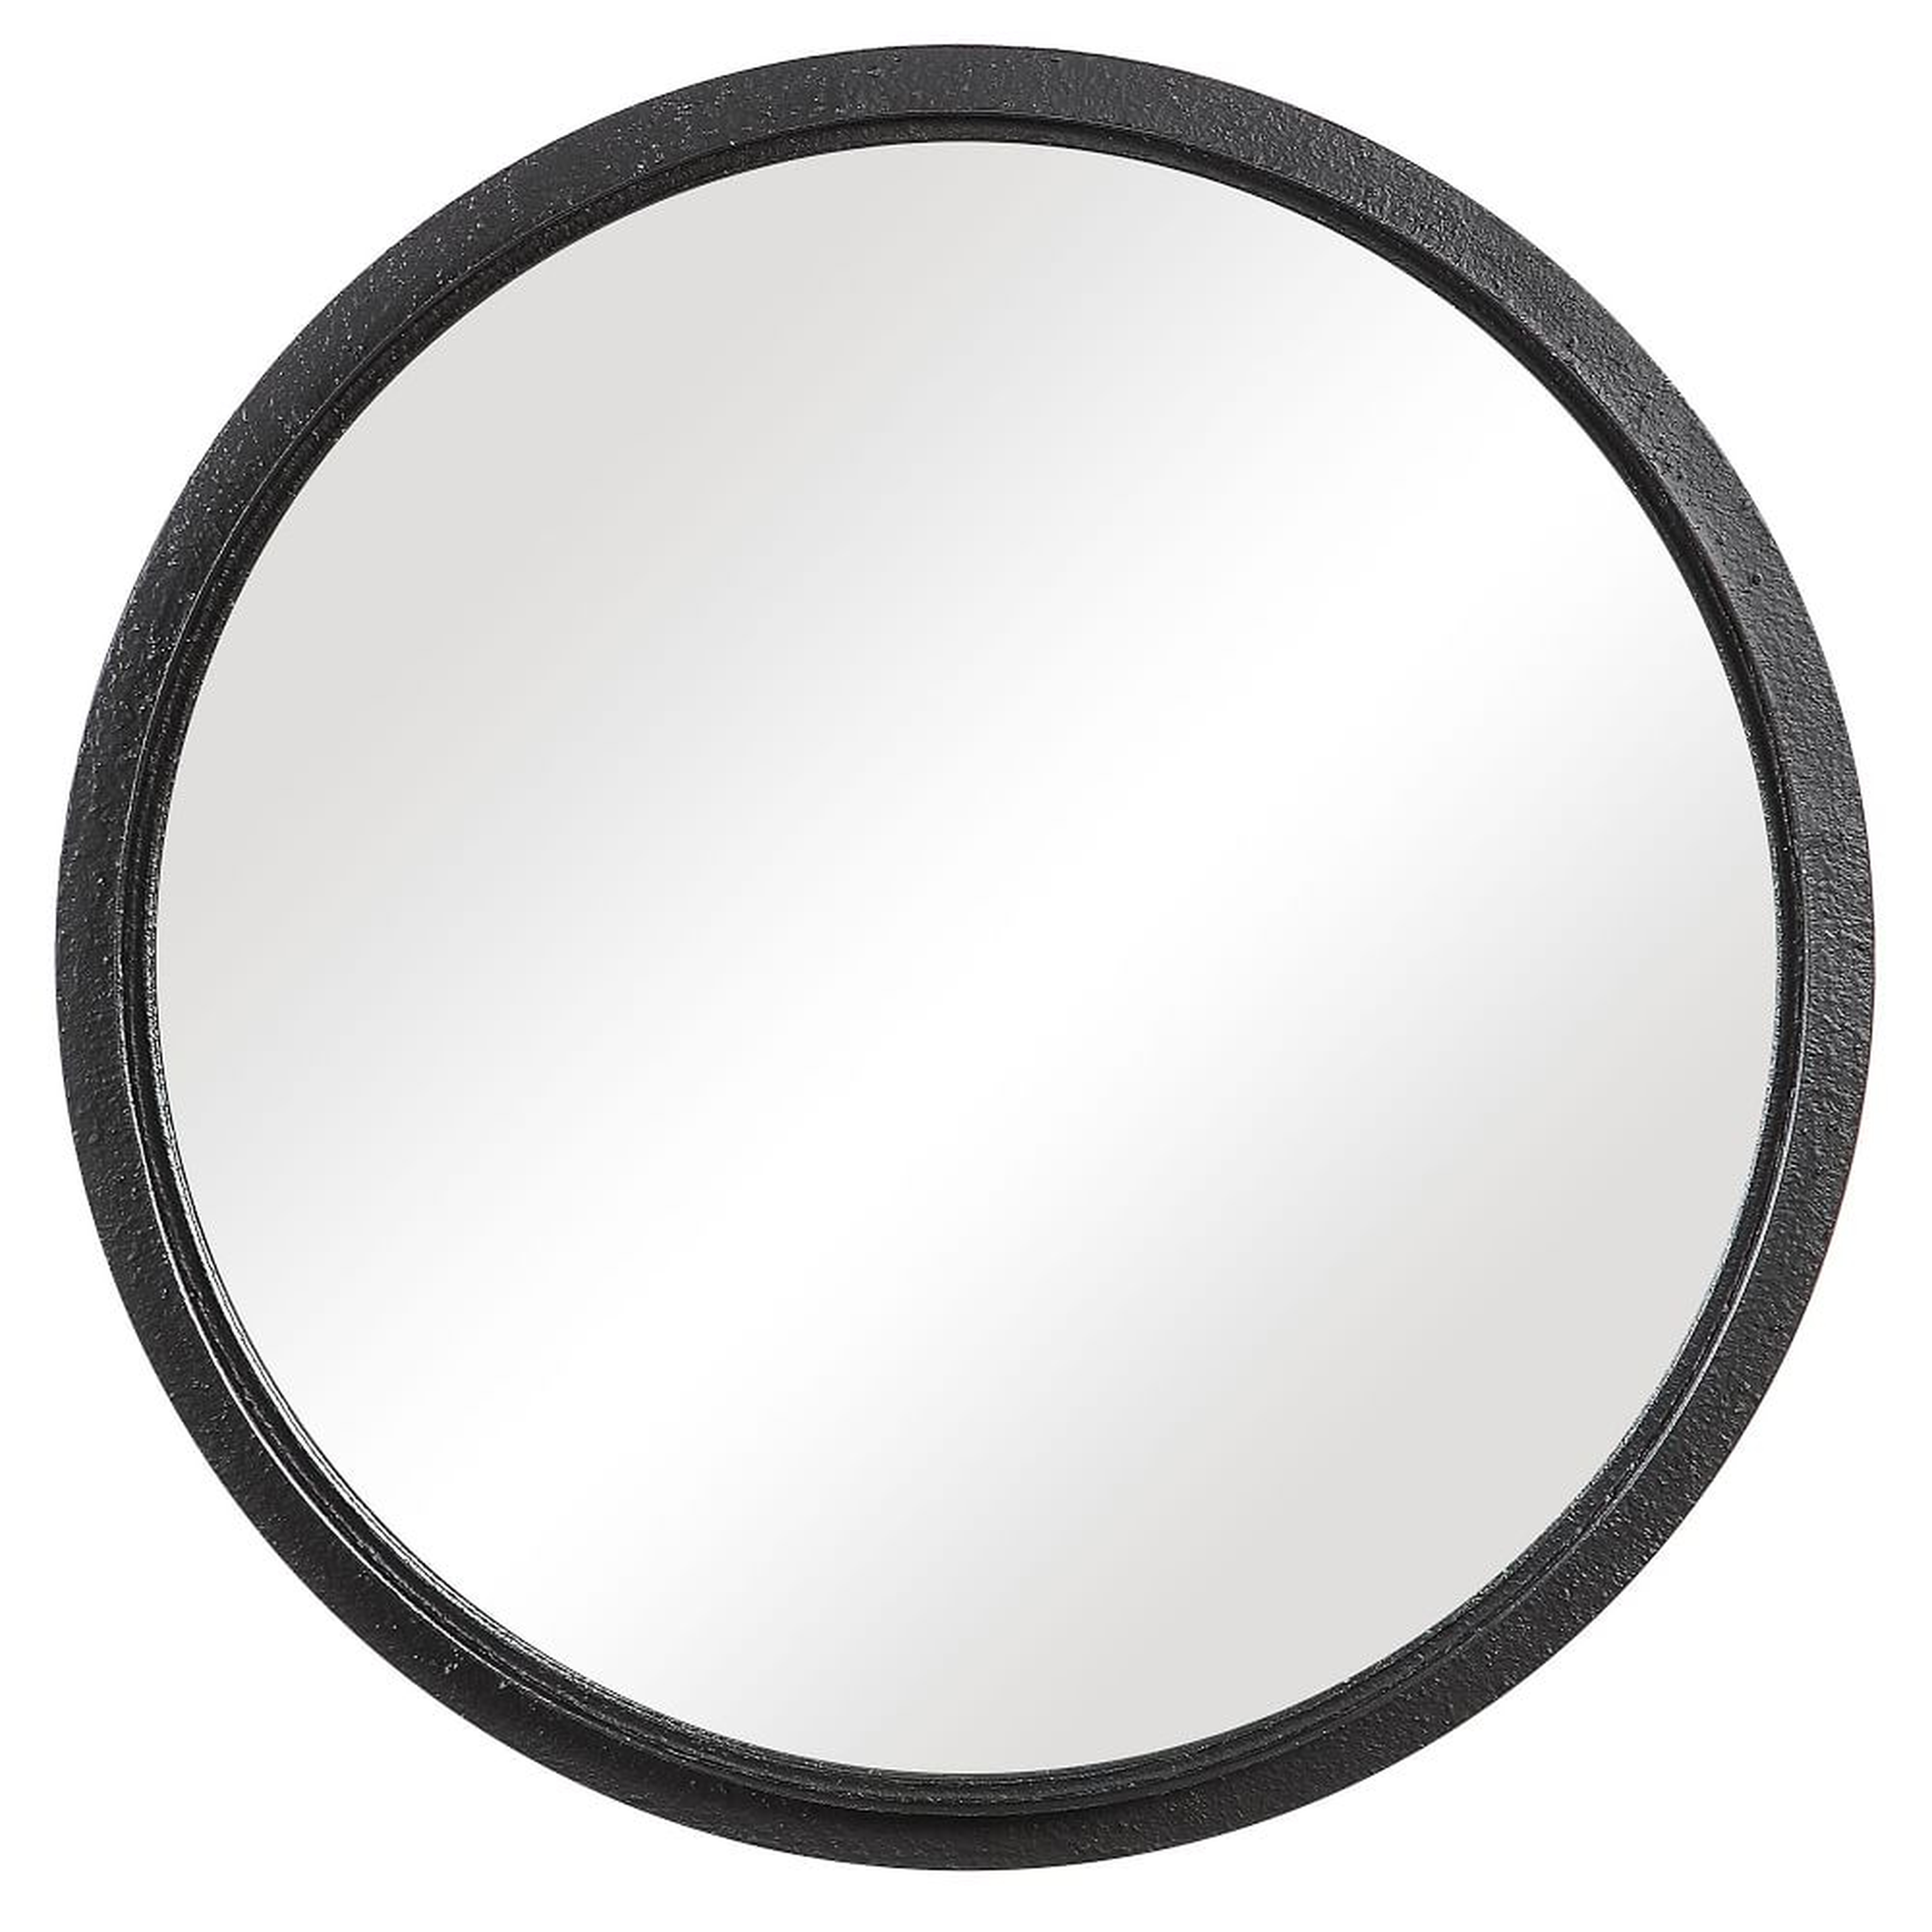 Textured Round Metal Mirror, Black, 30" Diam - West Elm